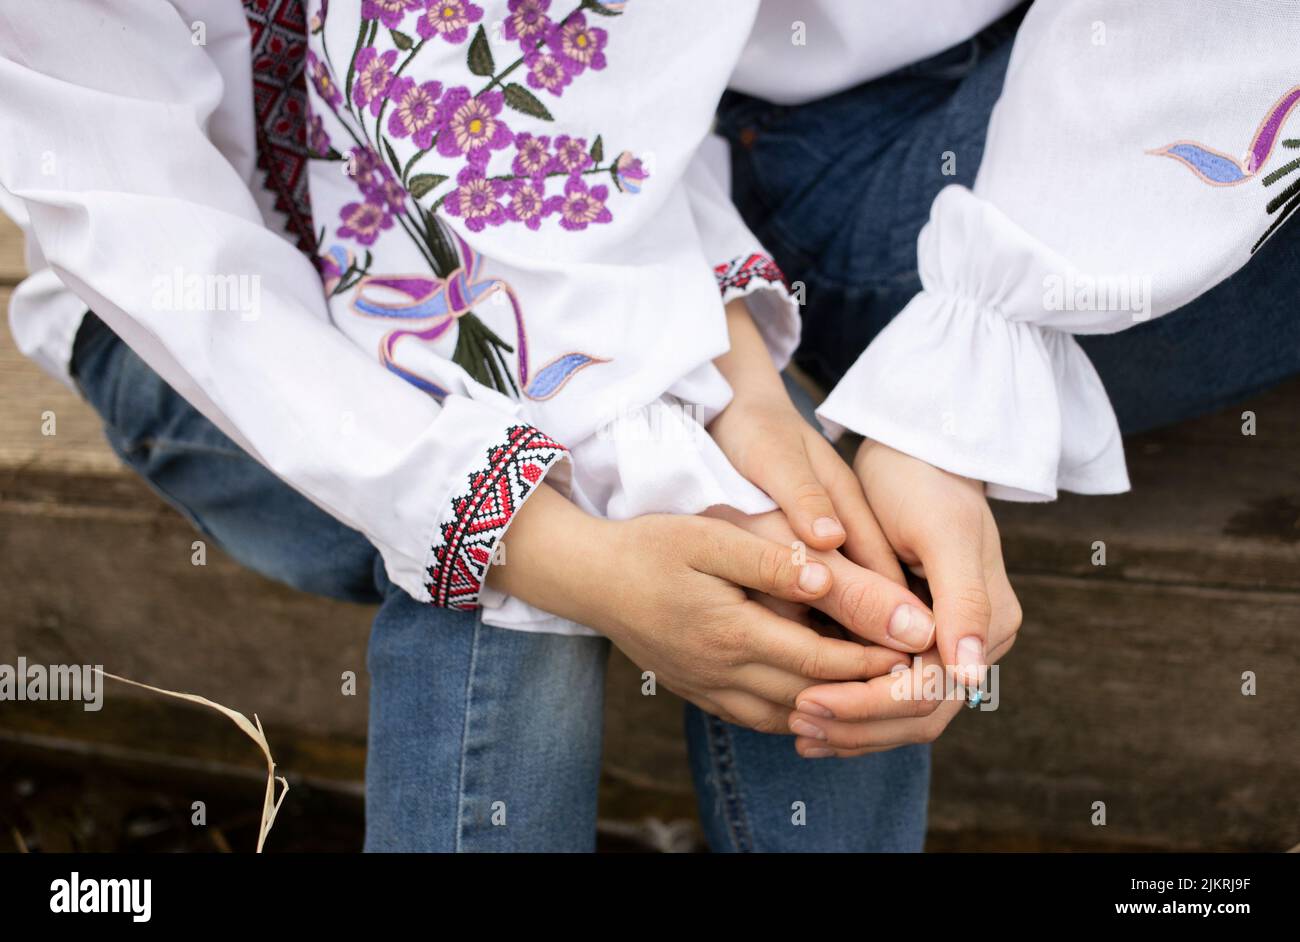 Kinder- und Frauenhände in bestickter ukrainischer Kleidung, halten sich gegenseitig. Konzept der Nation, Einheit, Familienunterstützung, Zärtlichkeit, Sicherheit. Humani Stockfoto